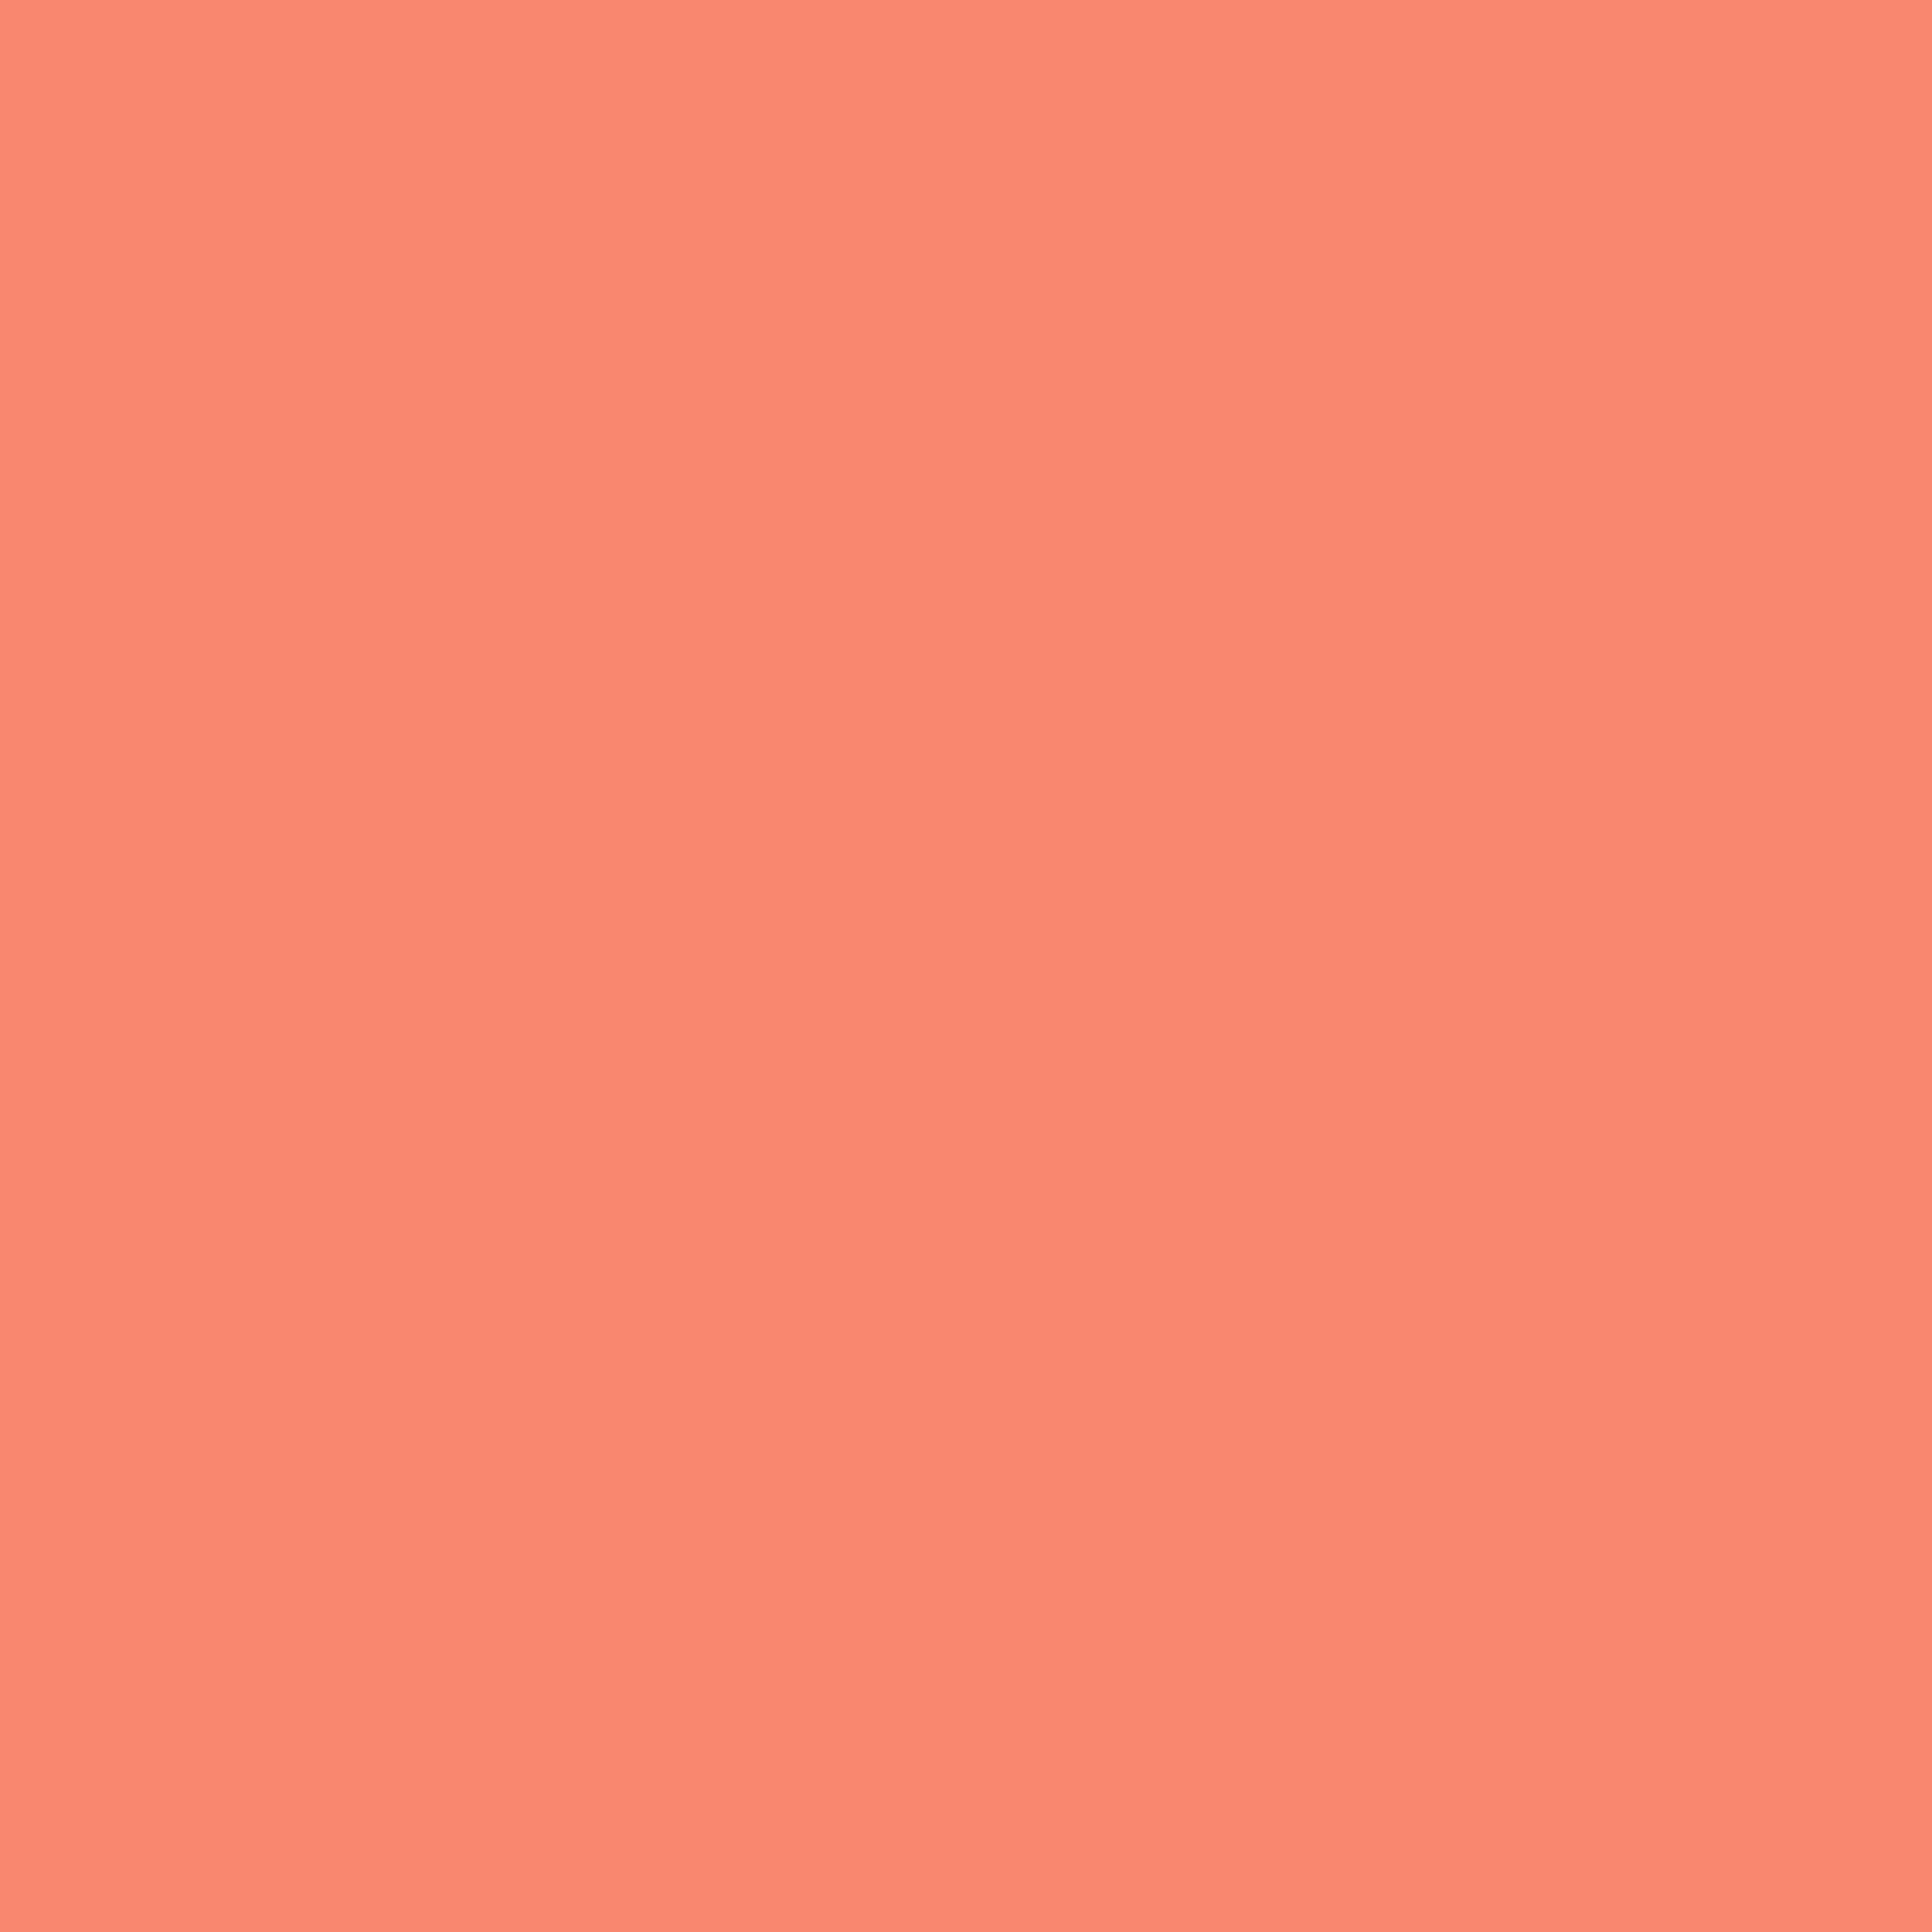 2000x2000 Tula Pink - Các yếu tố cần thiết cho nhà thiết kế - Màu hồng - Màu đồng nhất - Cotton- Vải Spirit miễn phí.  Màu sơn cam, Nền đồng màu, Nền thẩm mỹ